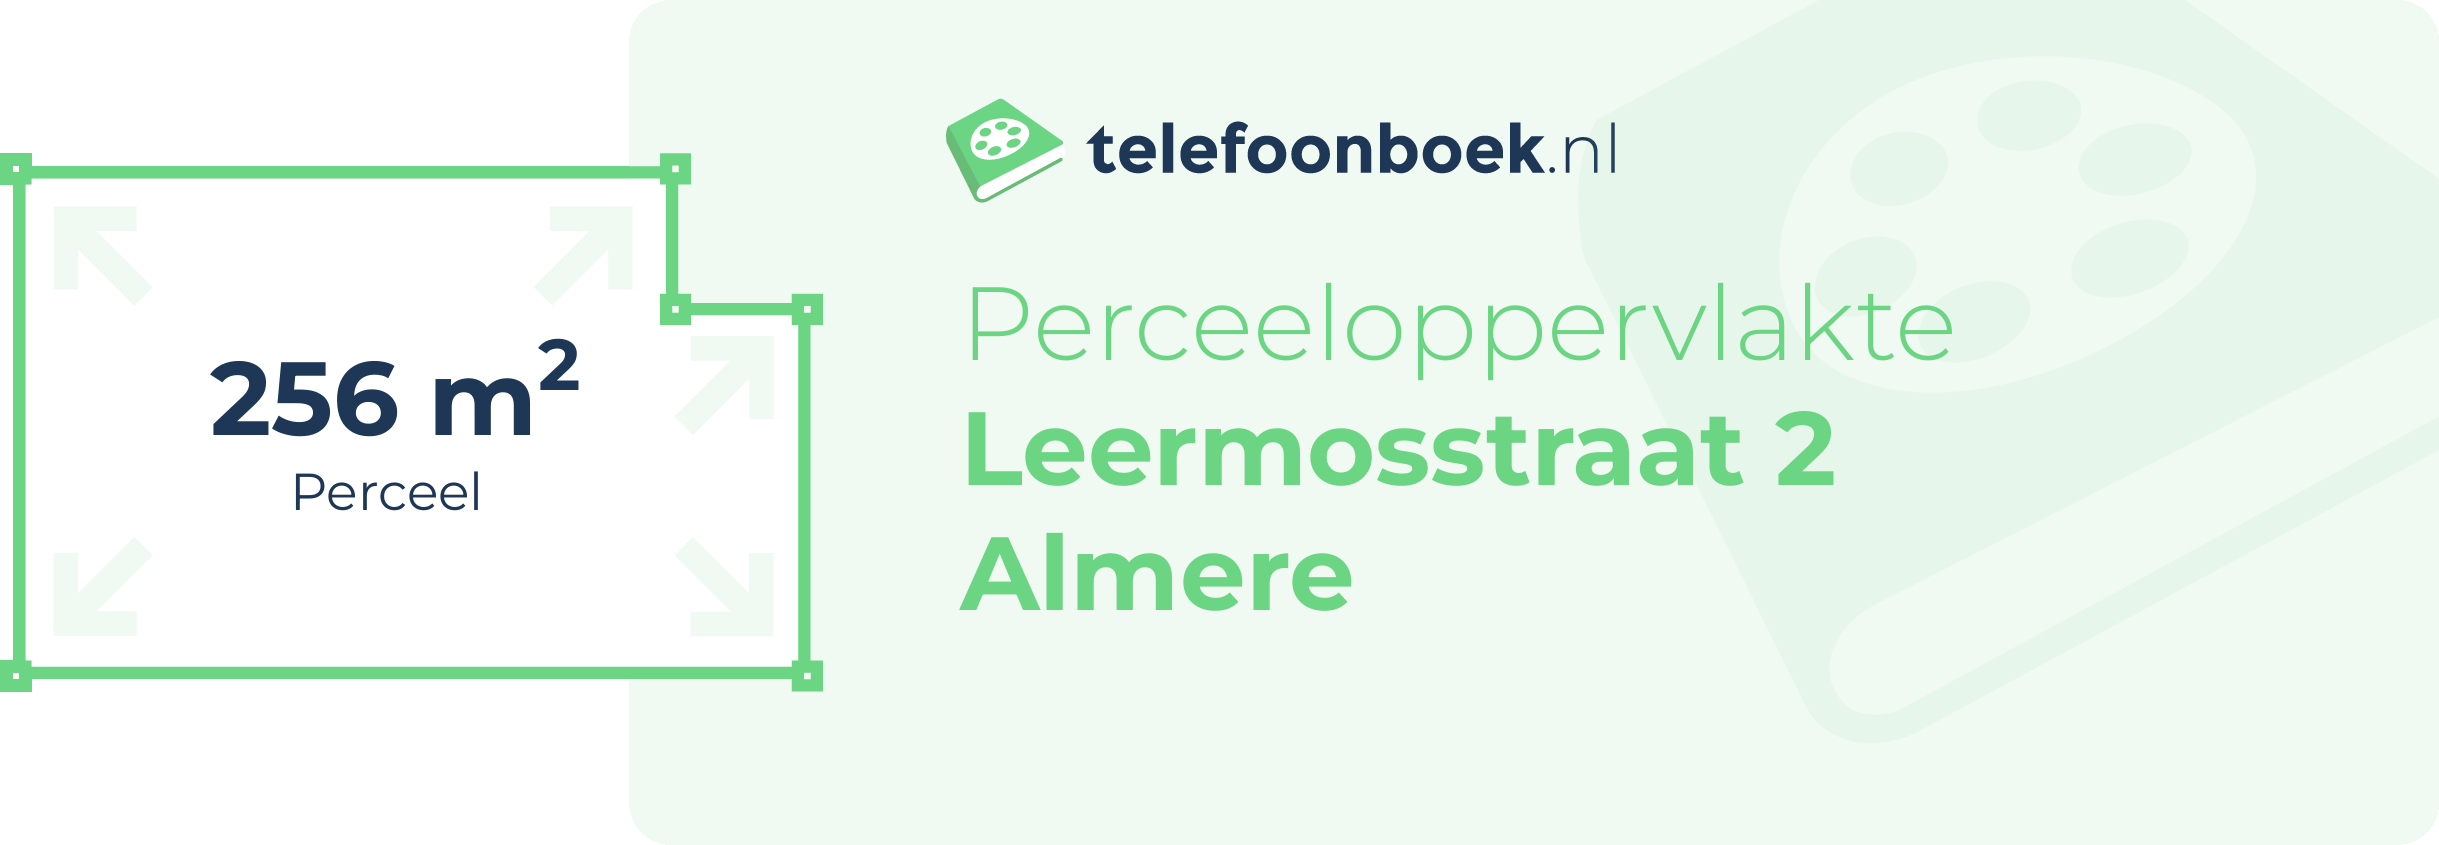 Perceeloppervlakte Leermosstraat 2 Almere